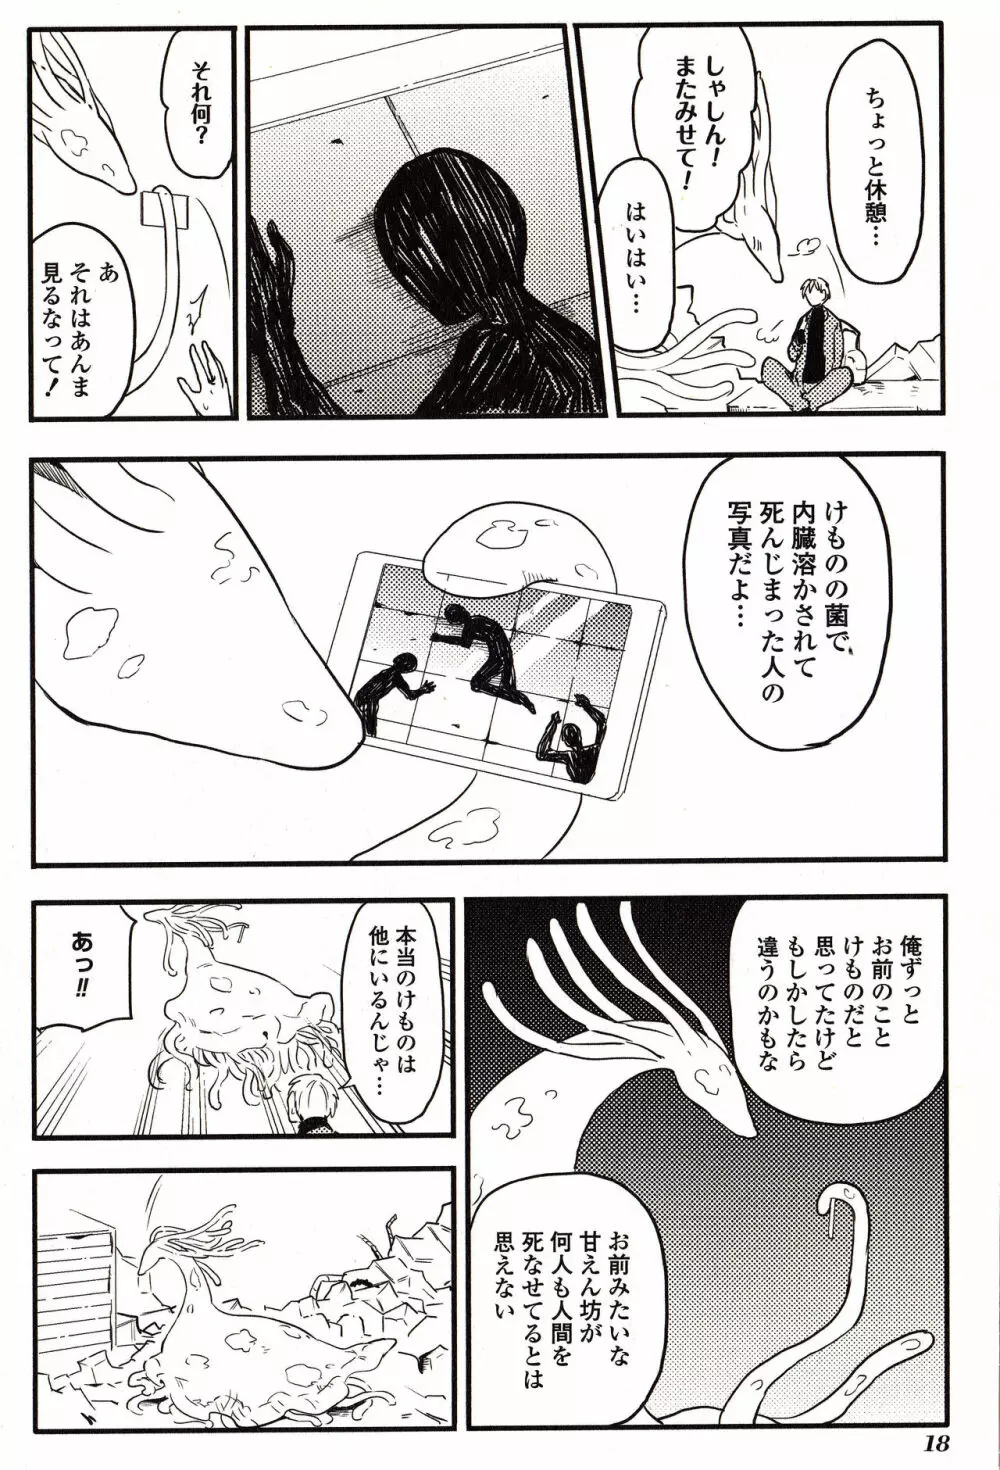 Sanzo manga 18ページ